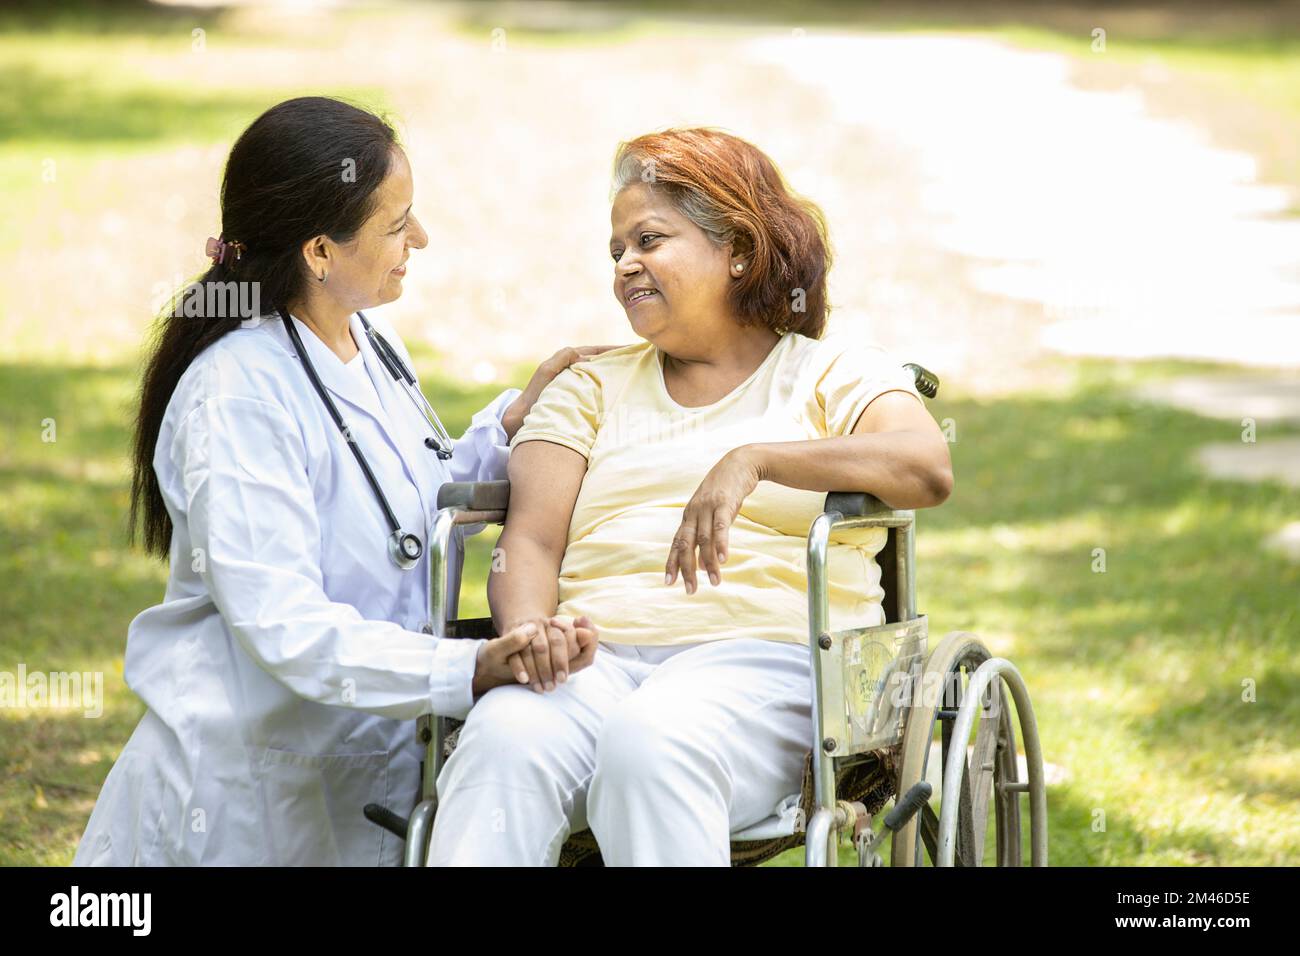 Infermiera indiana che si prende cura e parla con una paziente anziana in sedia a rotelle all'aperto al parco, medico asiatico aiutare e sostenere anziani maturi Foto Stock